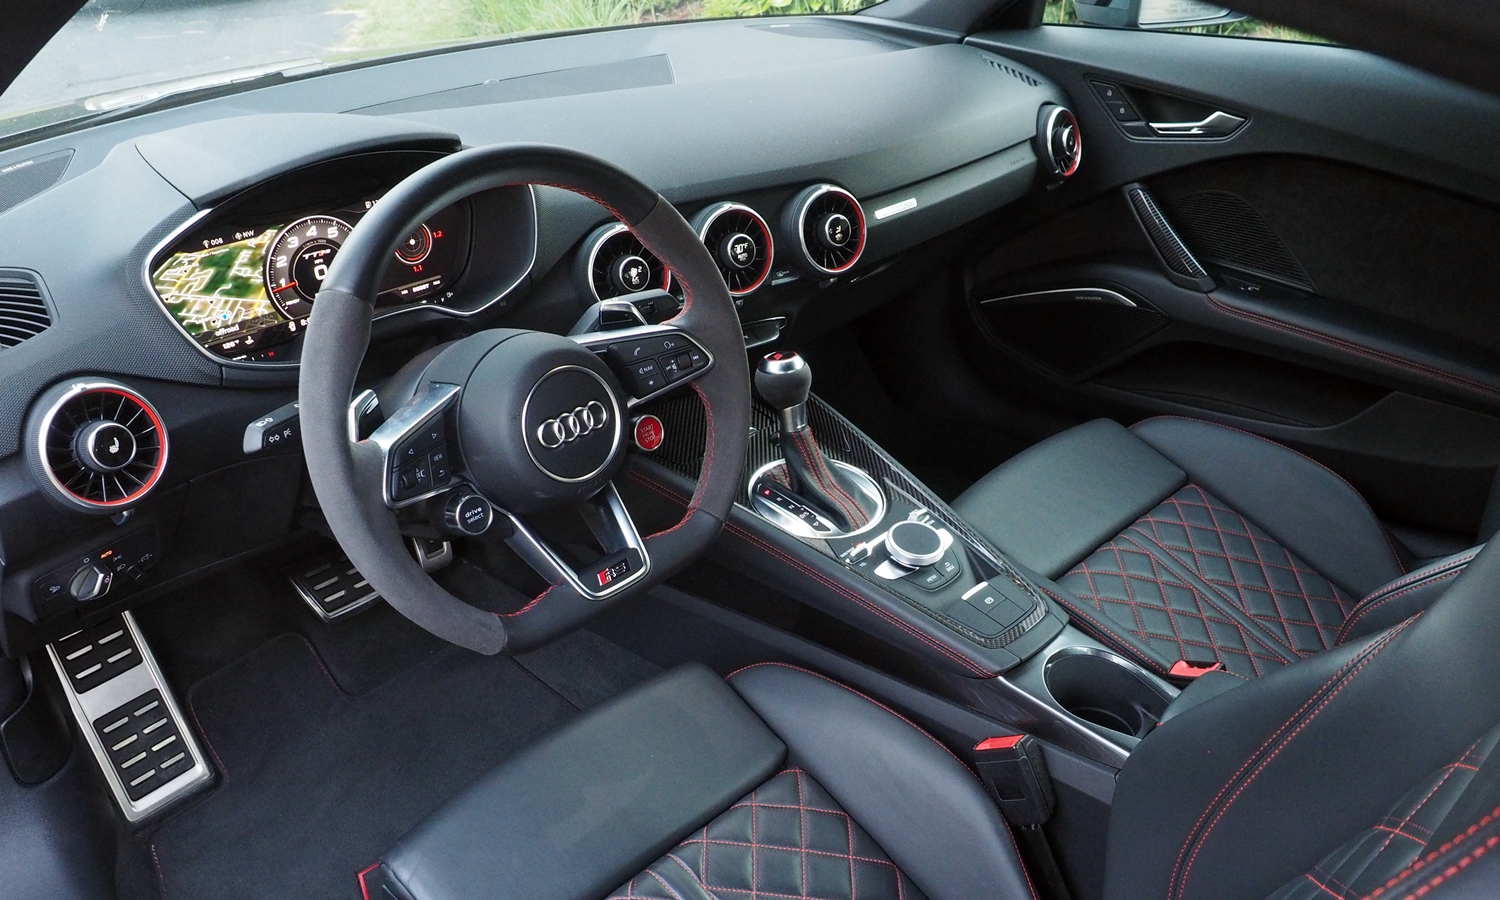 TT Reviews: Audi TT RS interior